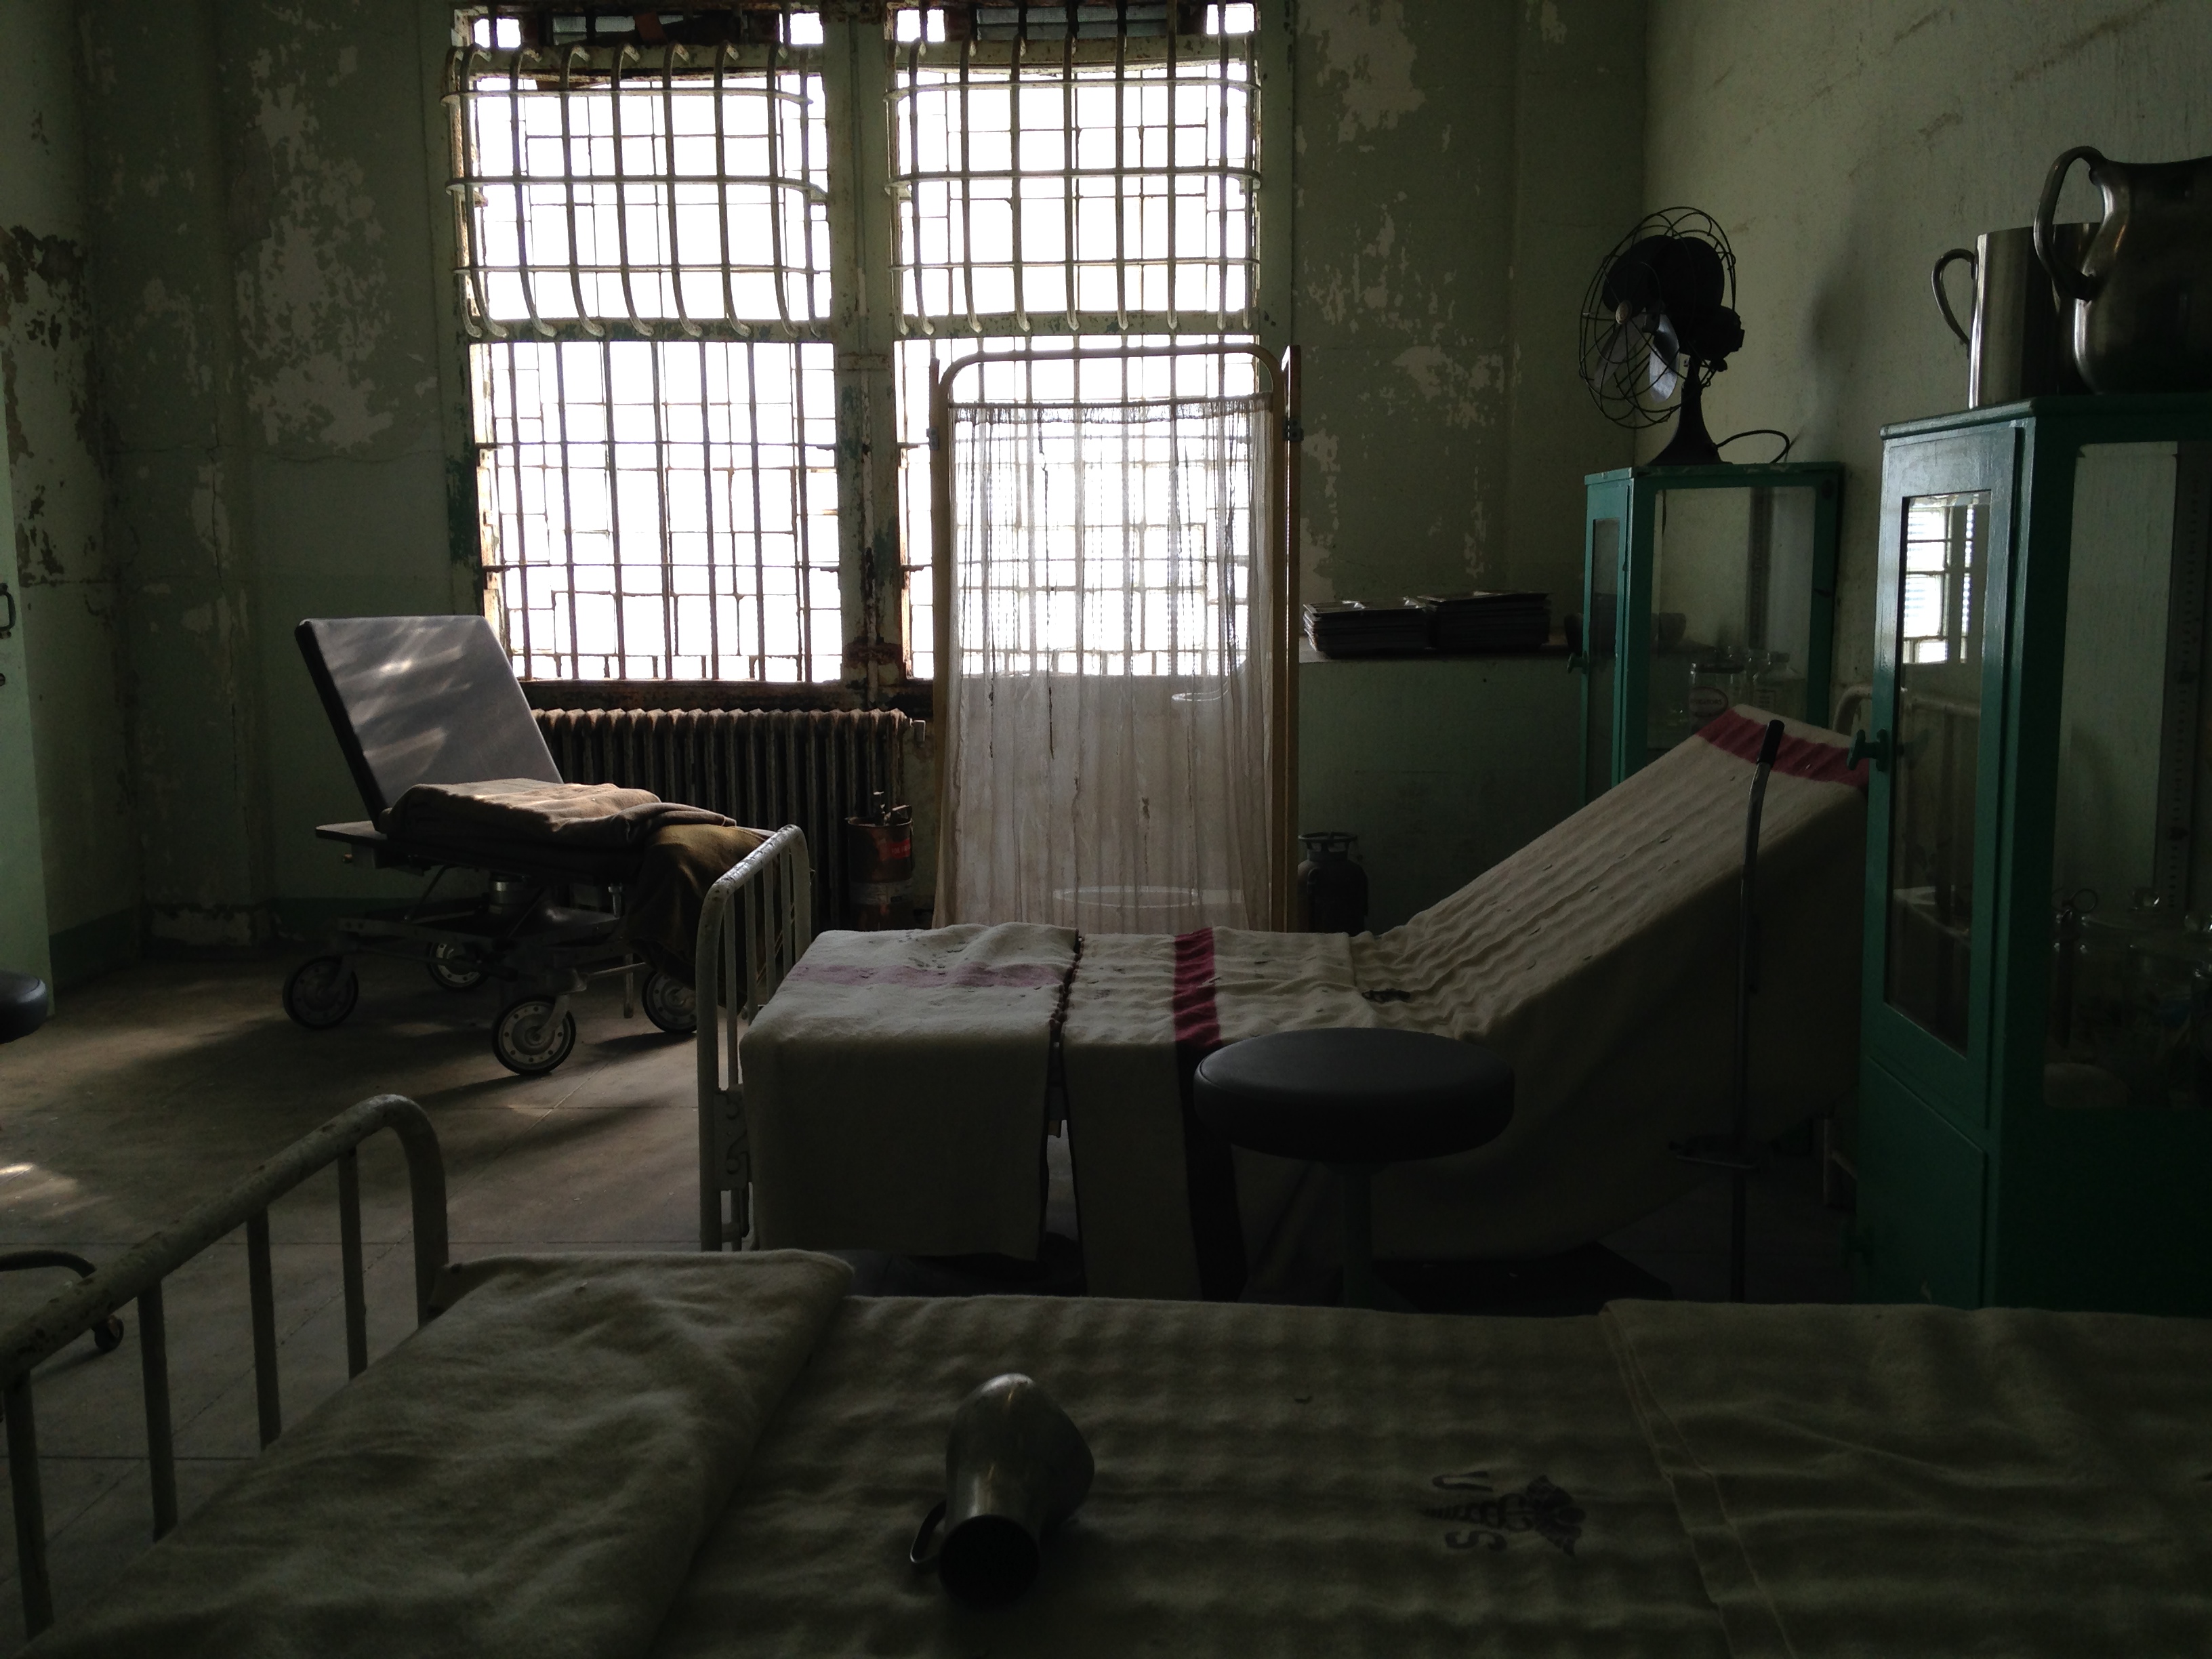 20140427 000909220 ios - Una visita a la Cárcel de Alcatraz